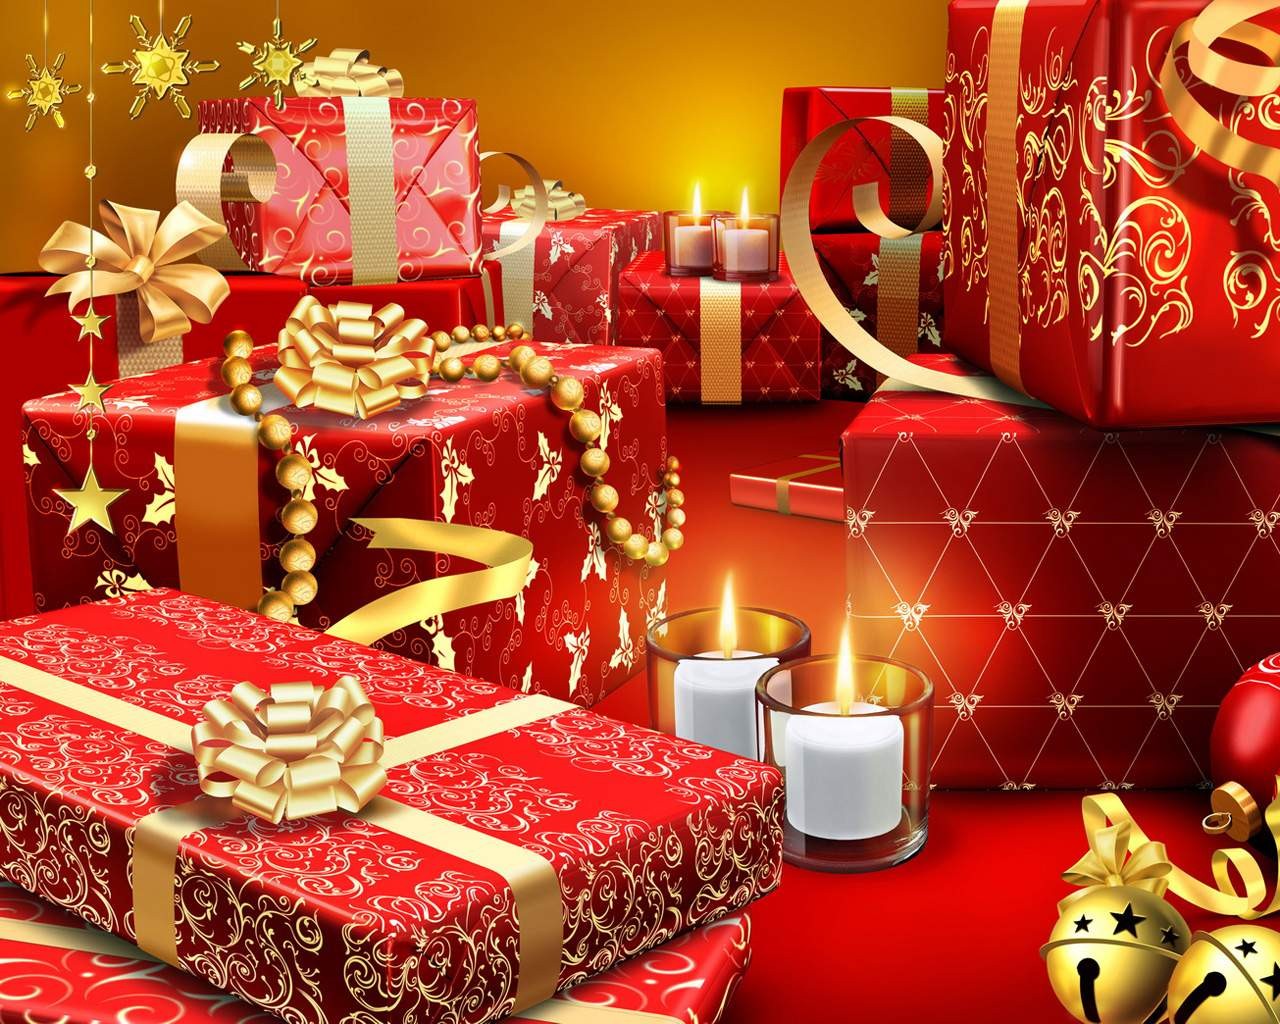  Al via lo shopping natalizio degli italiani con un budget per i regali di 219 euro a famiglia